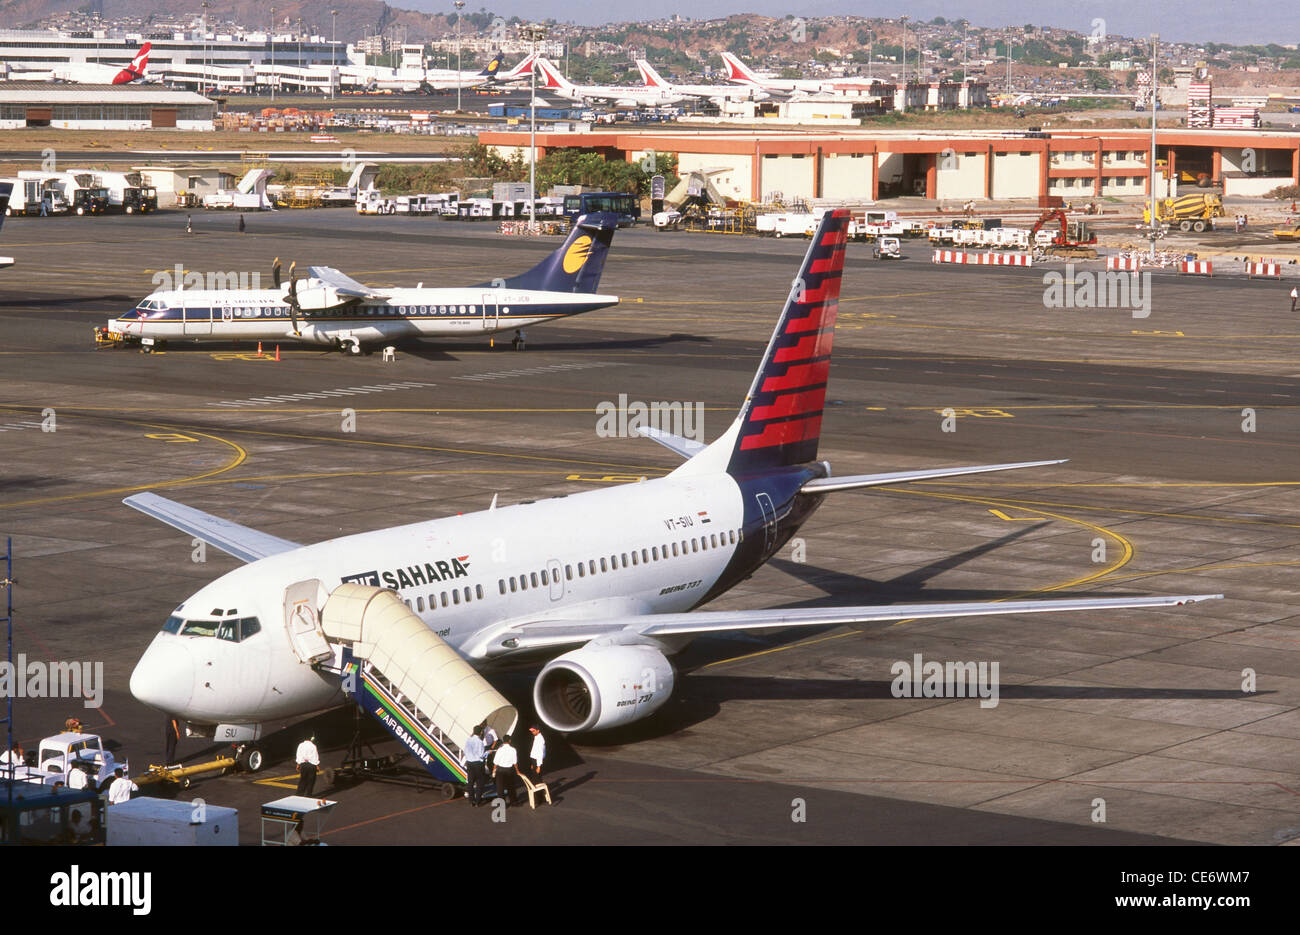 Sahara occidental et avion jet airways avion tarmac de l'aéroport santacruz Bombay Mumbai maharashtra Inde Banque D'Images